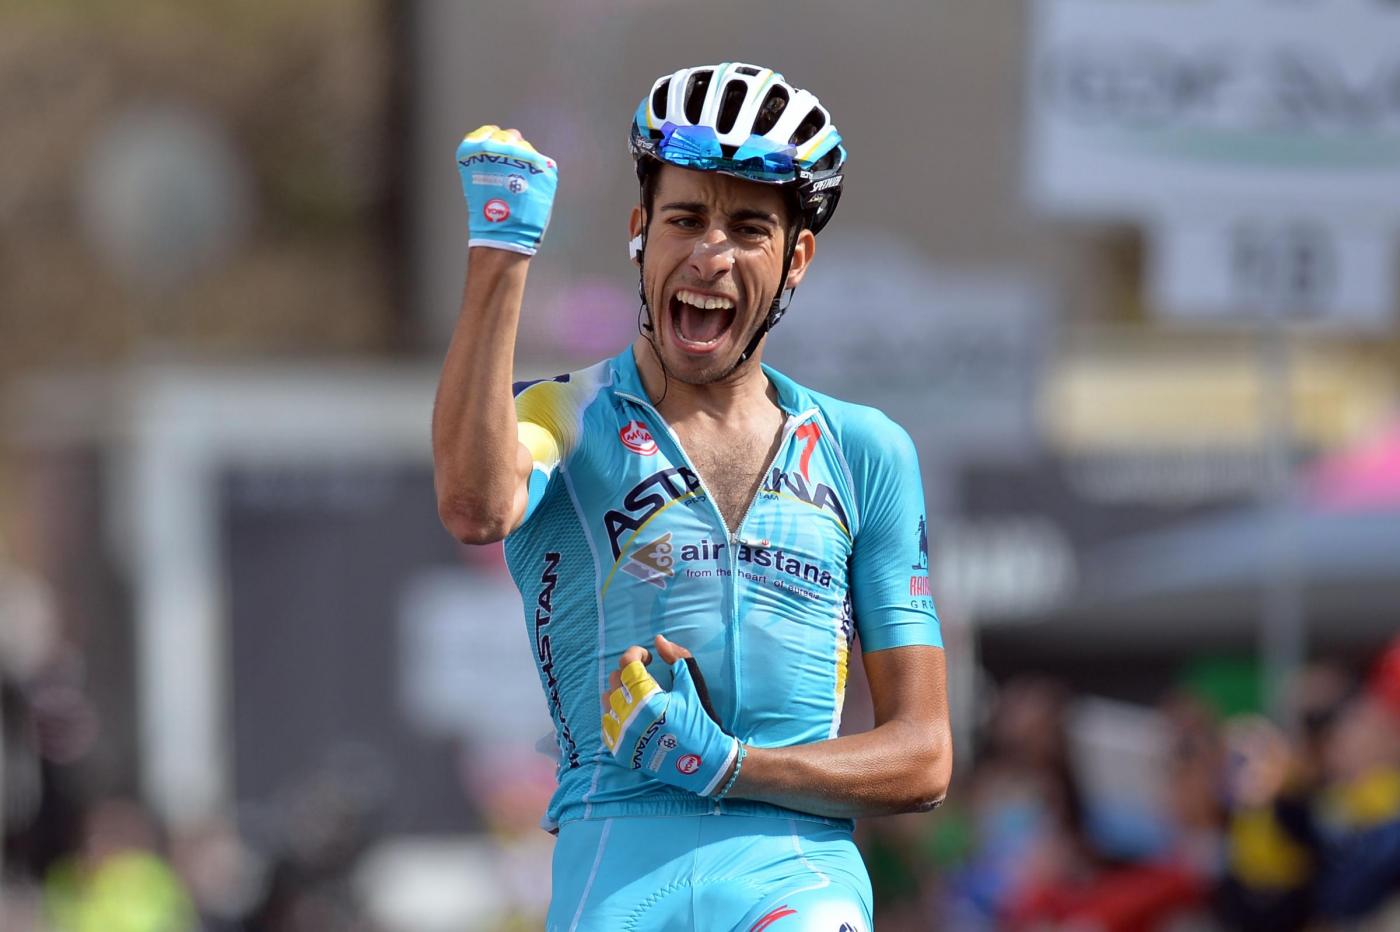 Tour de France, Aru ottimista: “la cronoscalata di Megeve sarà importante” - SportFair